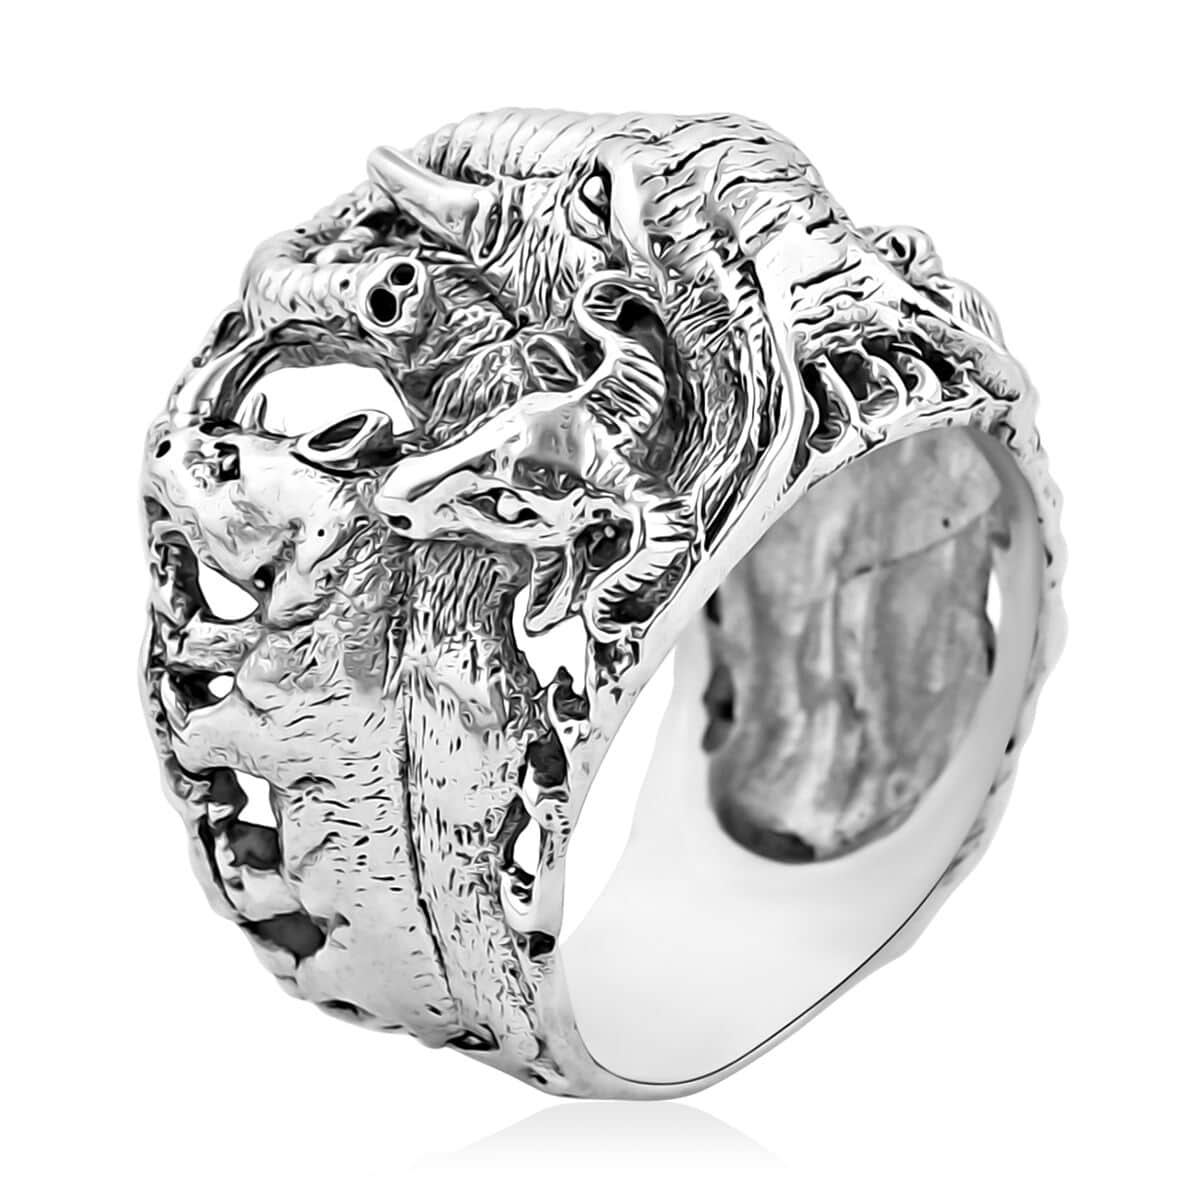 Bali Legacy Sterling Silver Safari Animal Ring (Size 5.0) 11.35 Grams image number 4